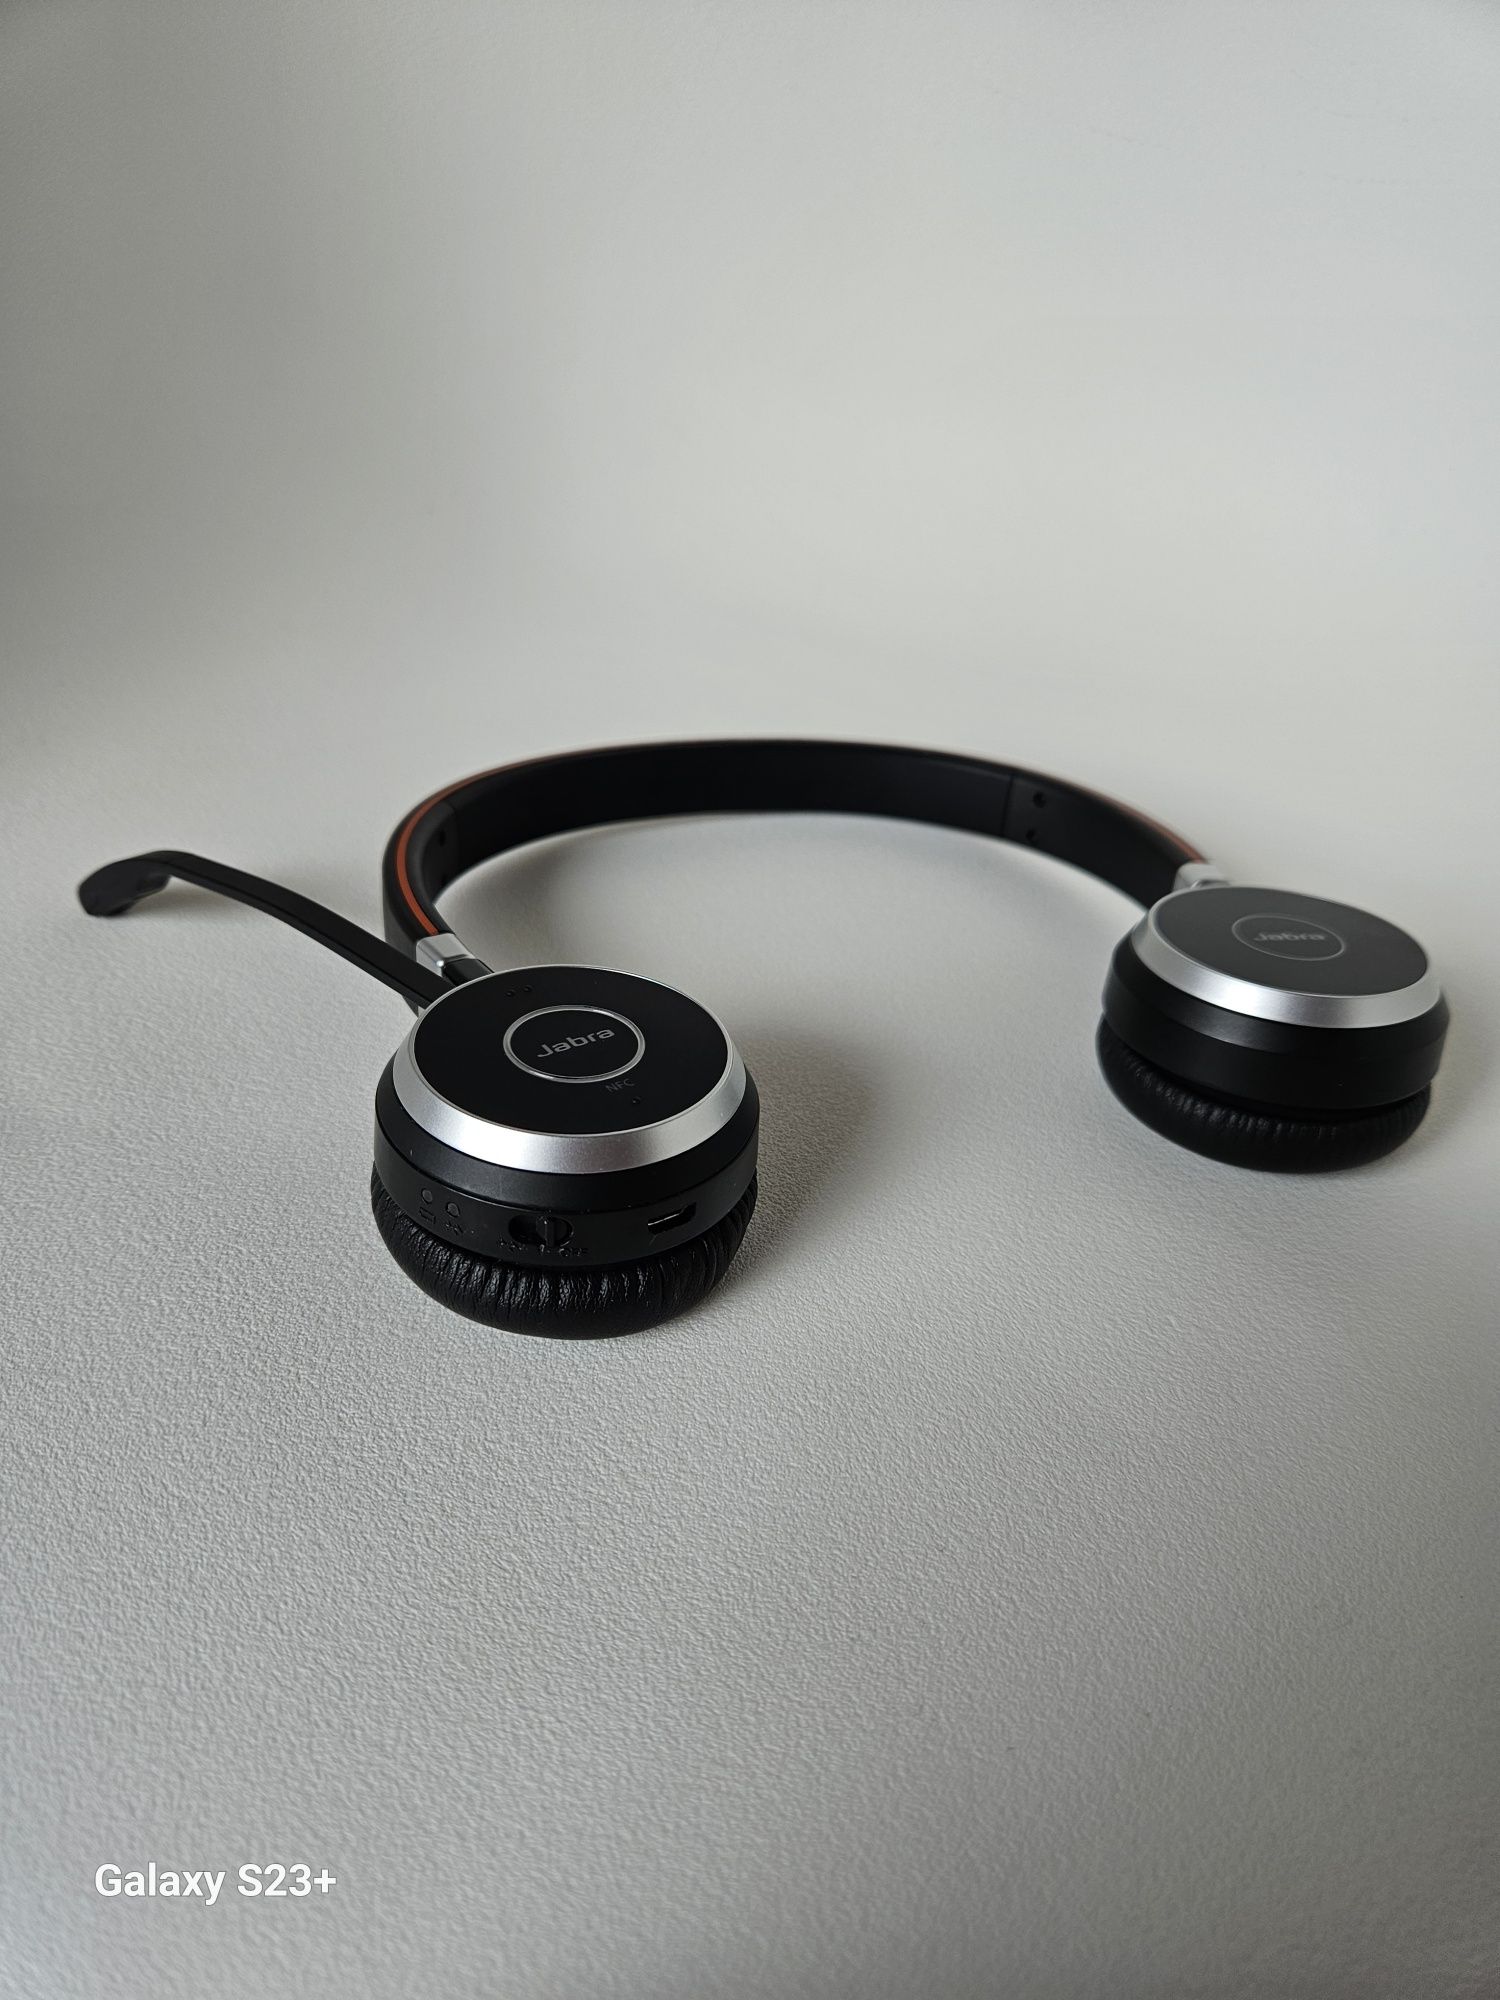 Jabra Evolve 65 słuchawki bezprzewodowe